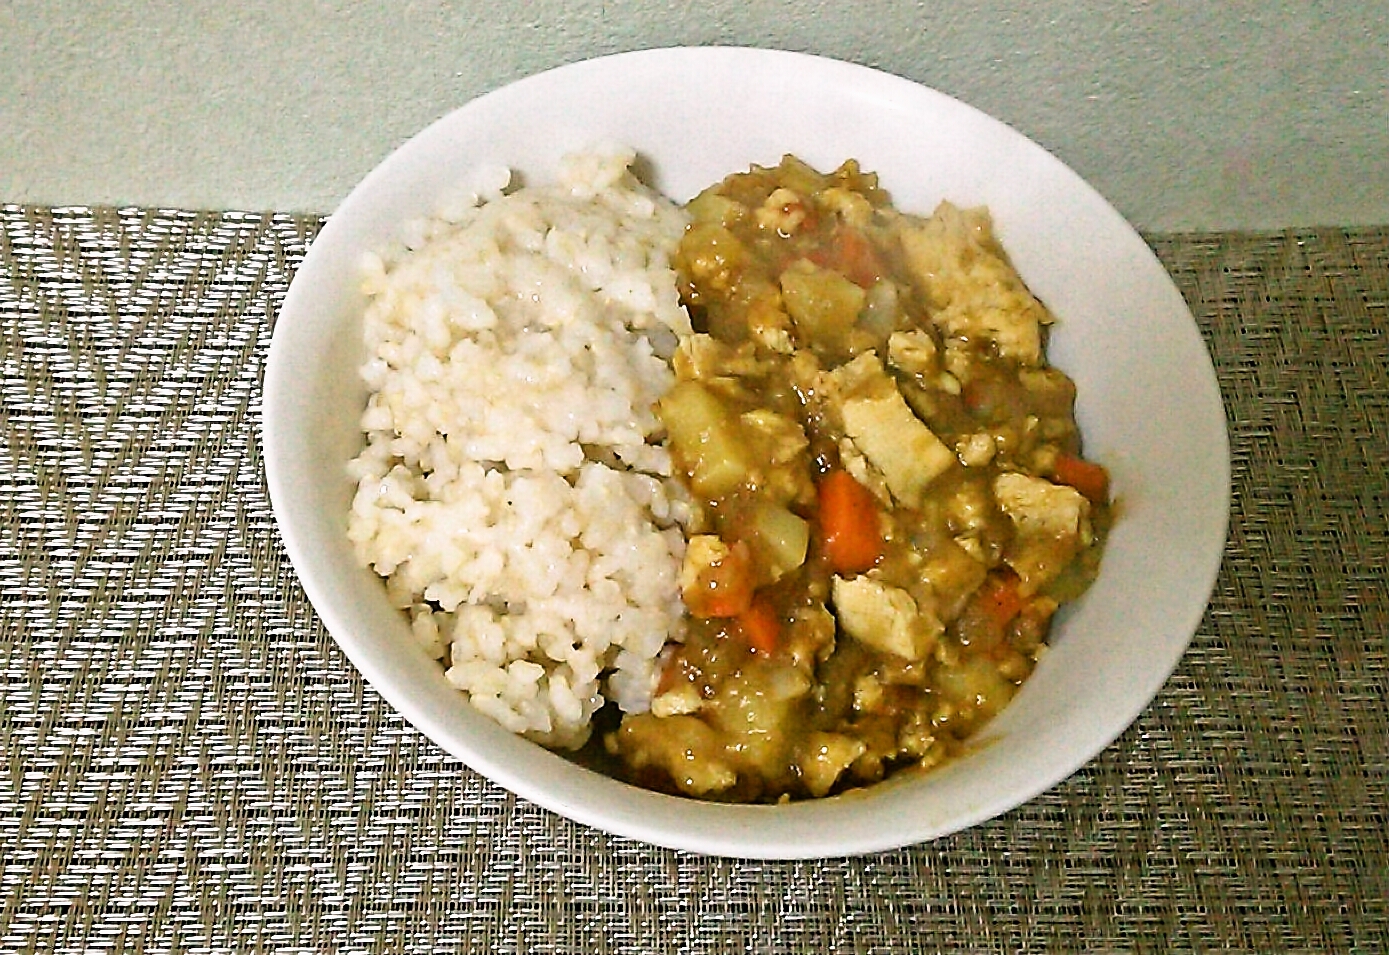 カレーの肉を豆腐で代用して貧乏飯 貧乏飯レシピ